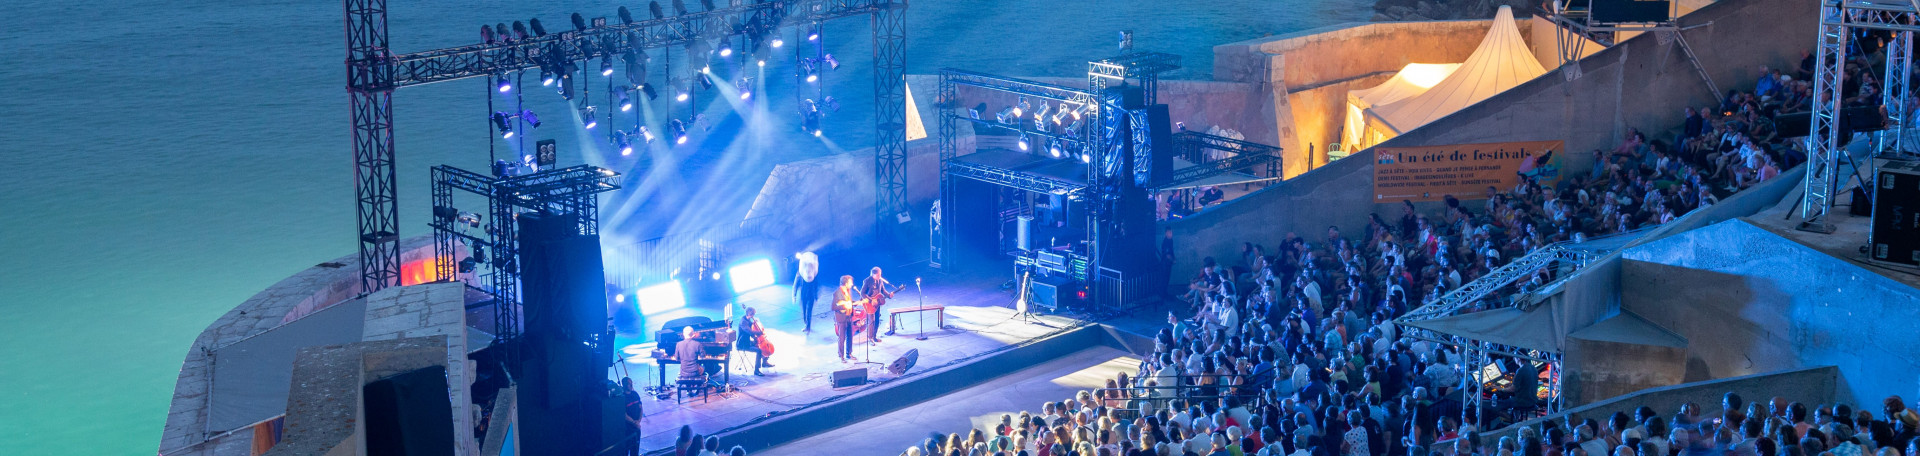 concerts-festivals-spectacles-dans-l-archipel-de-thau-15890-15987